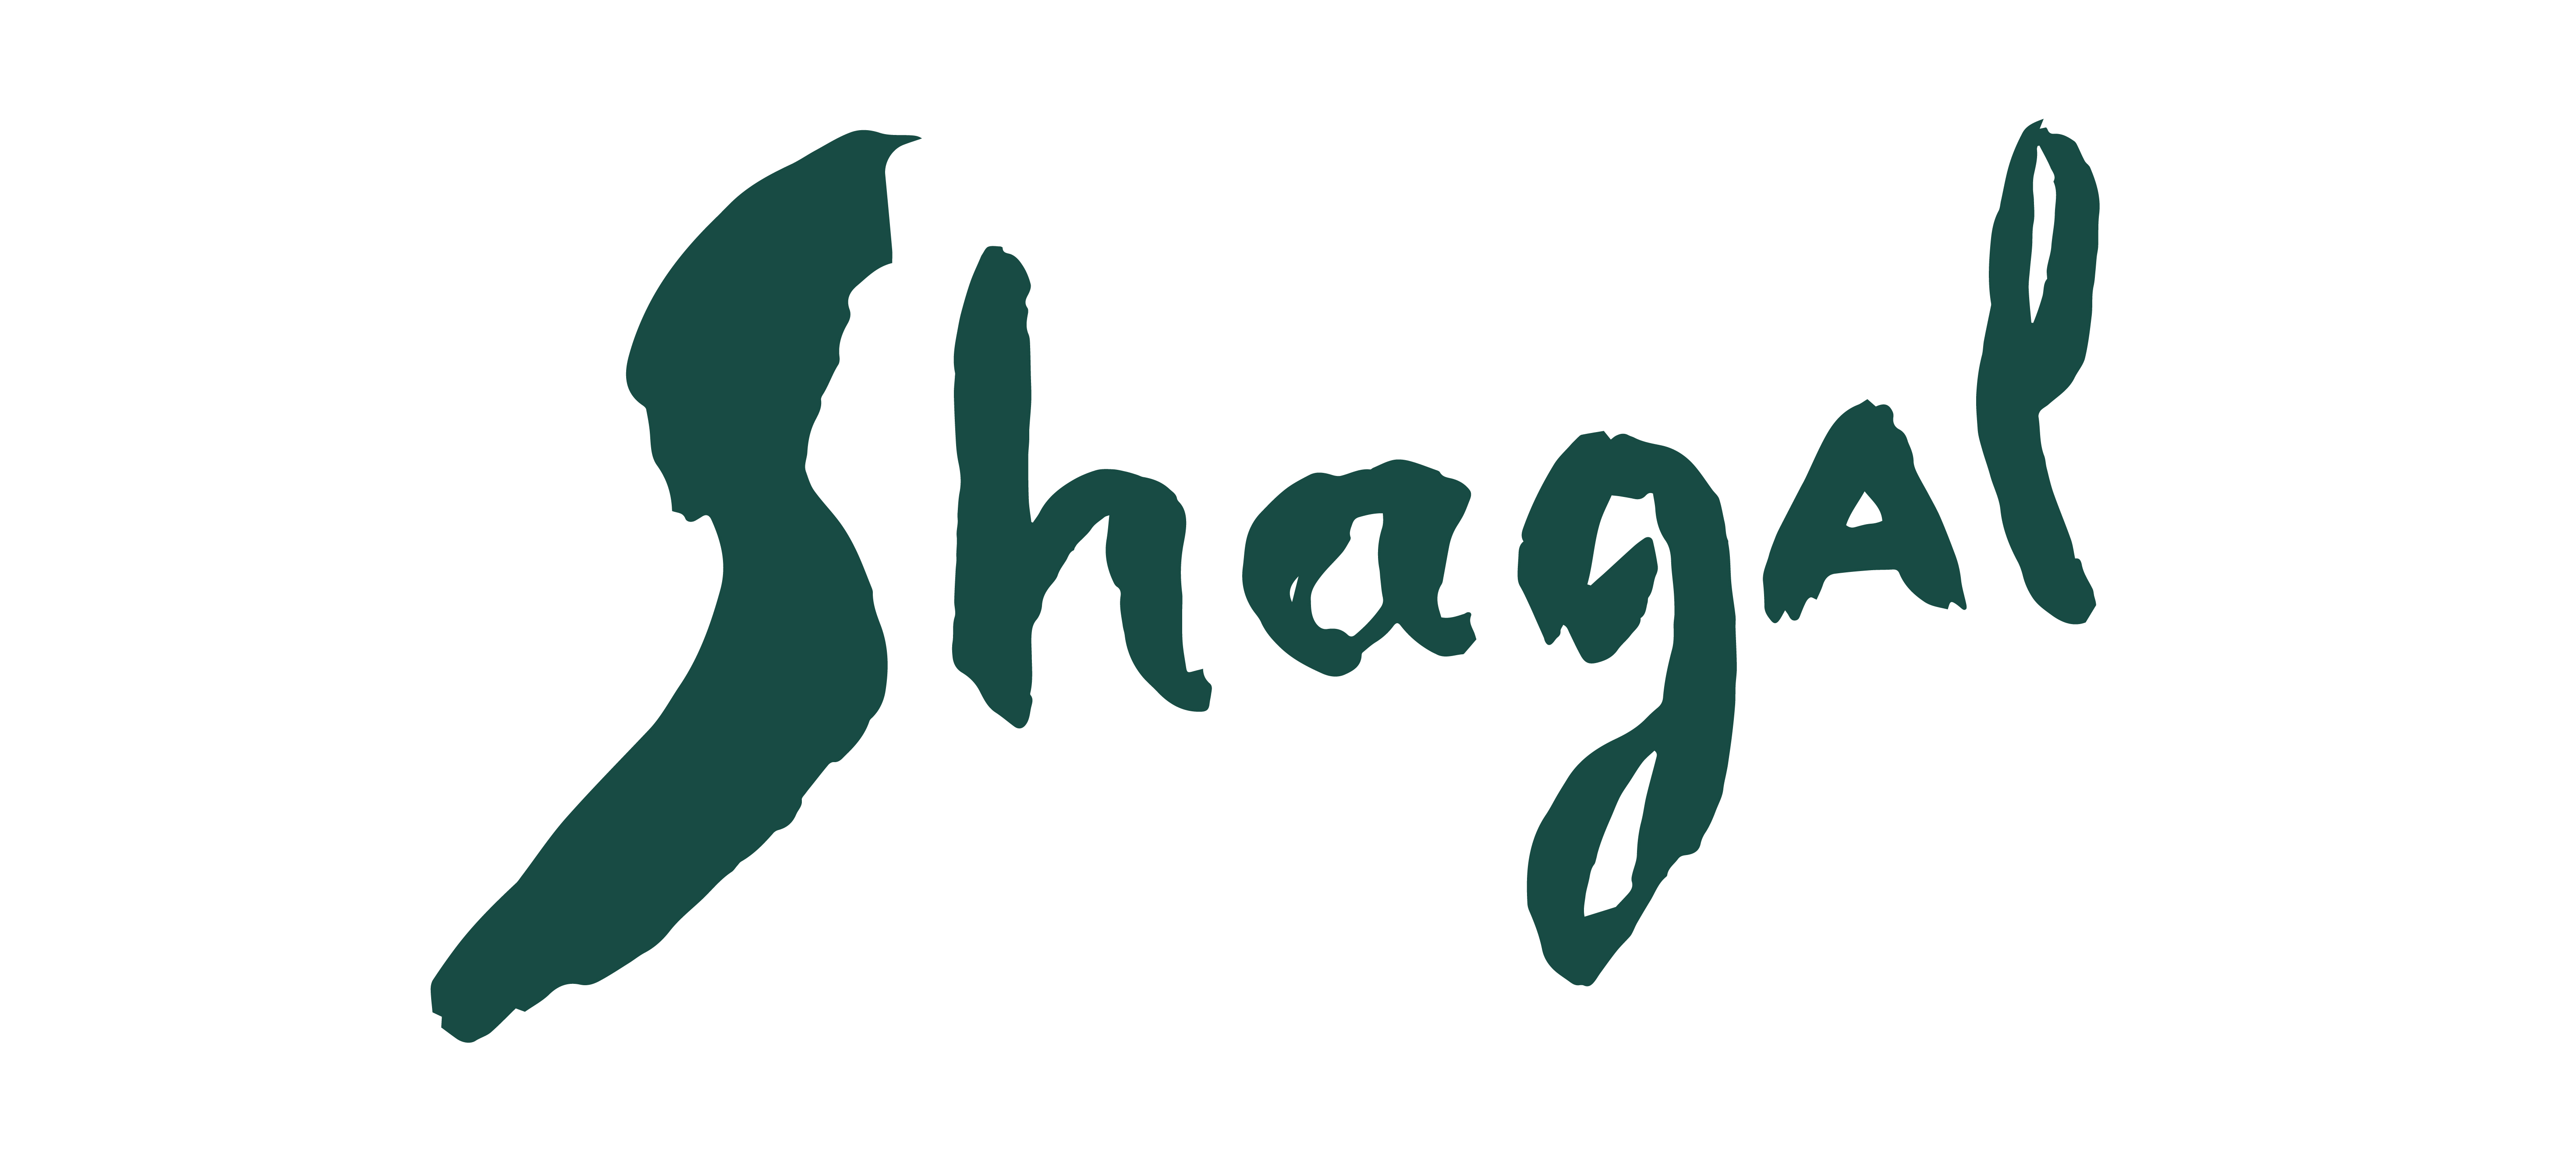 shagal_logo_1400h1000.jpg